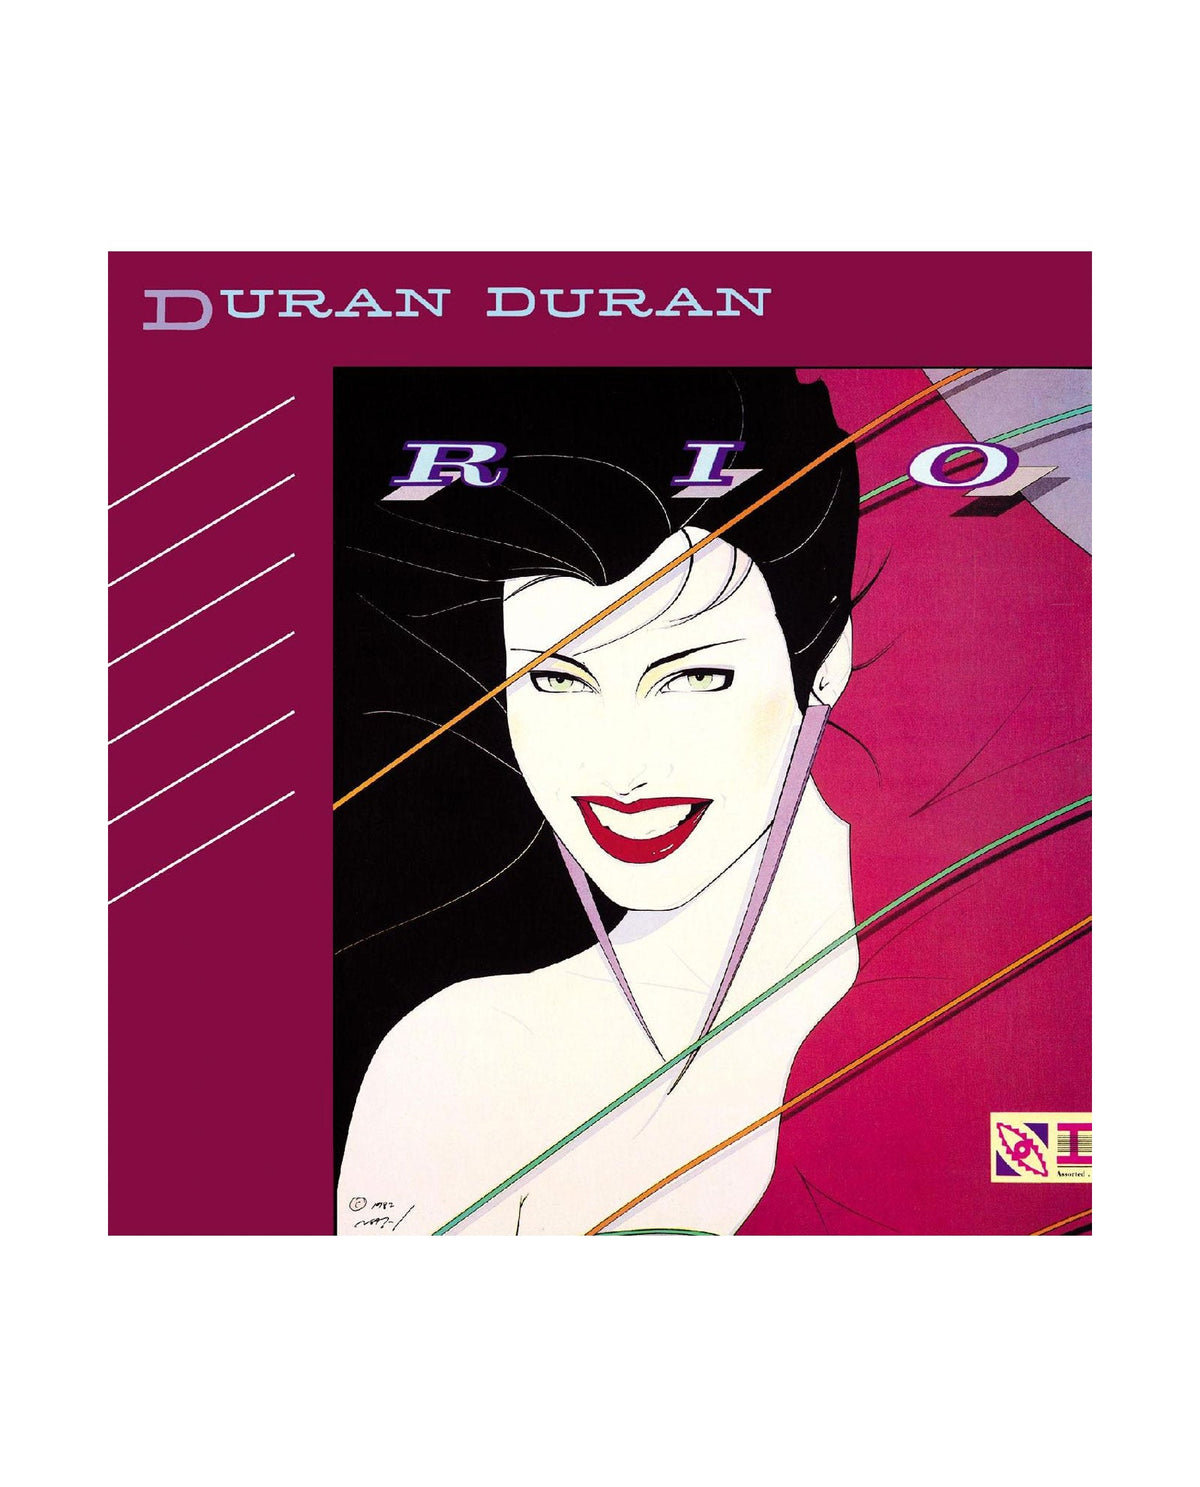 Duran Duran - CD "Rio" - D2fy · Rocktud - D2fy